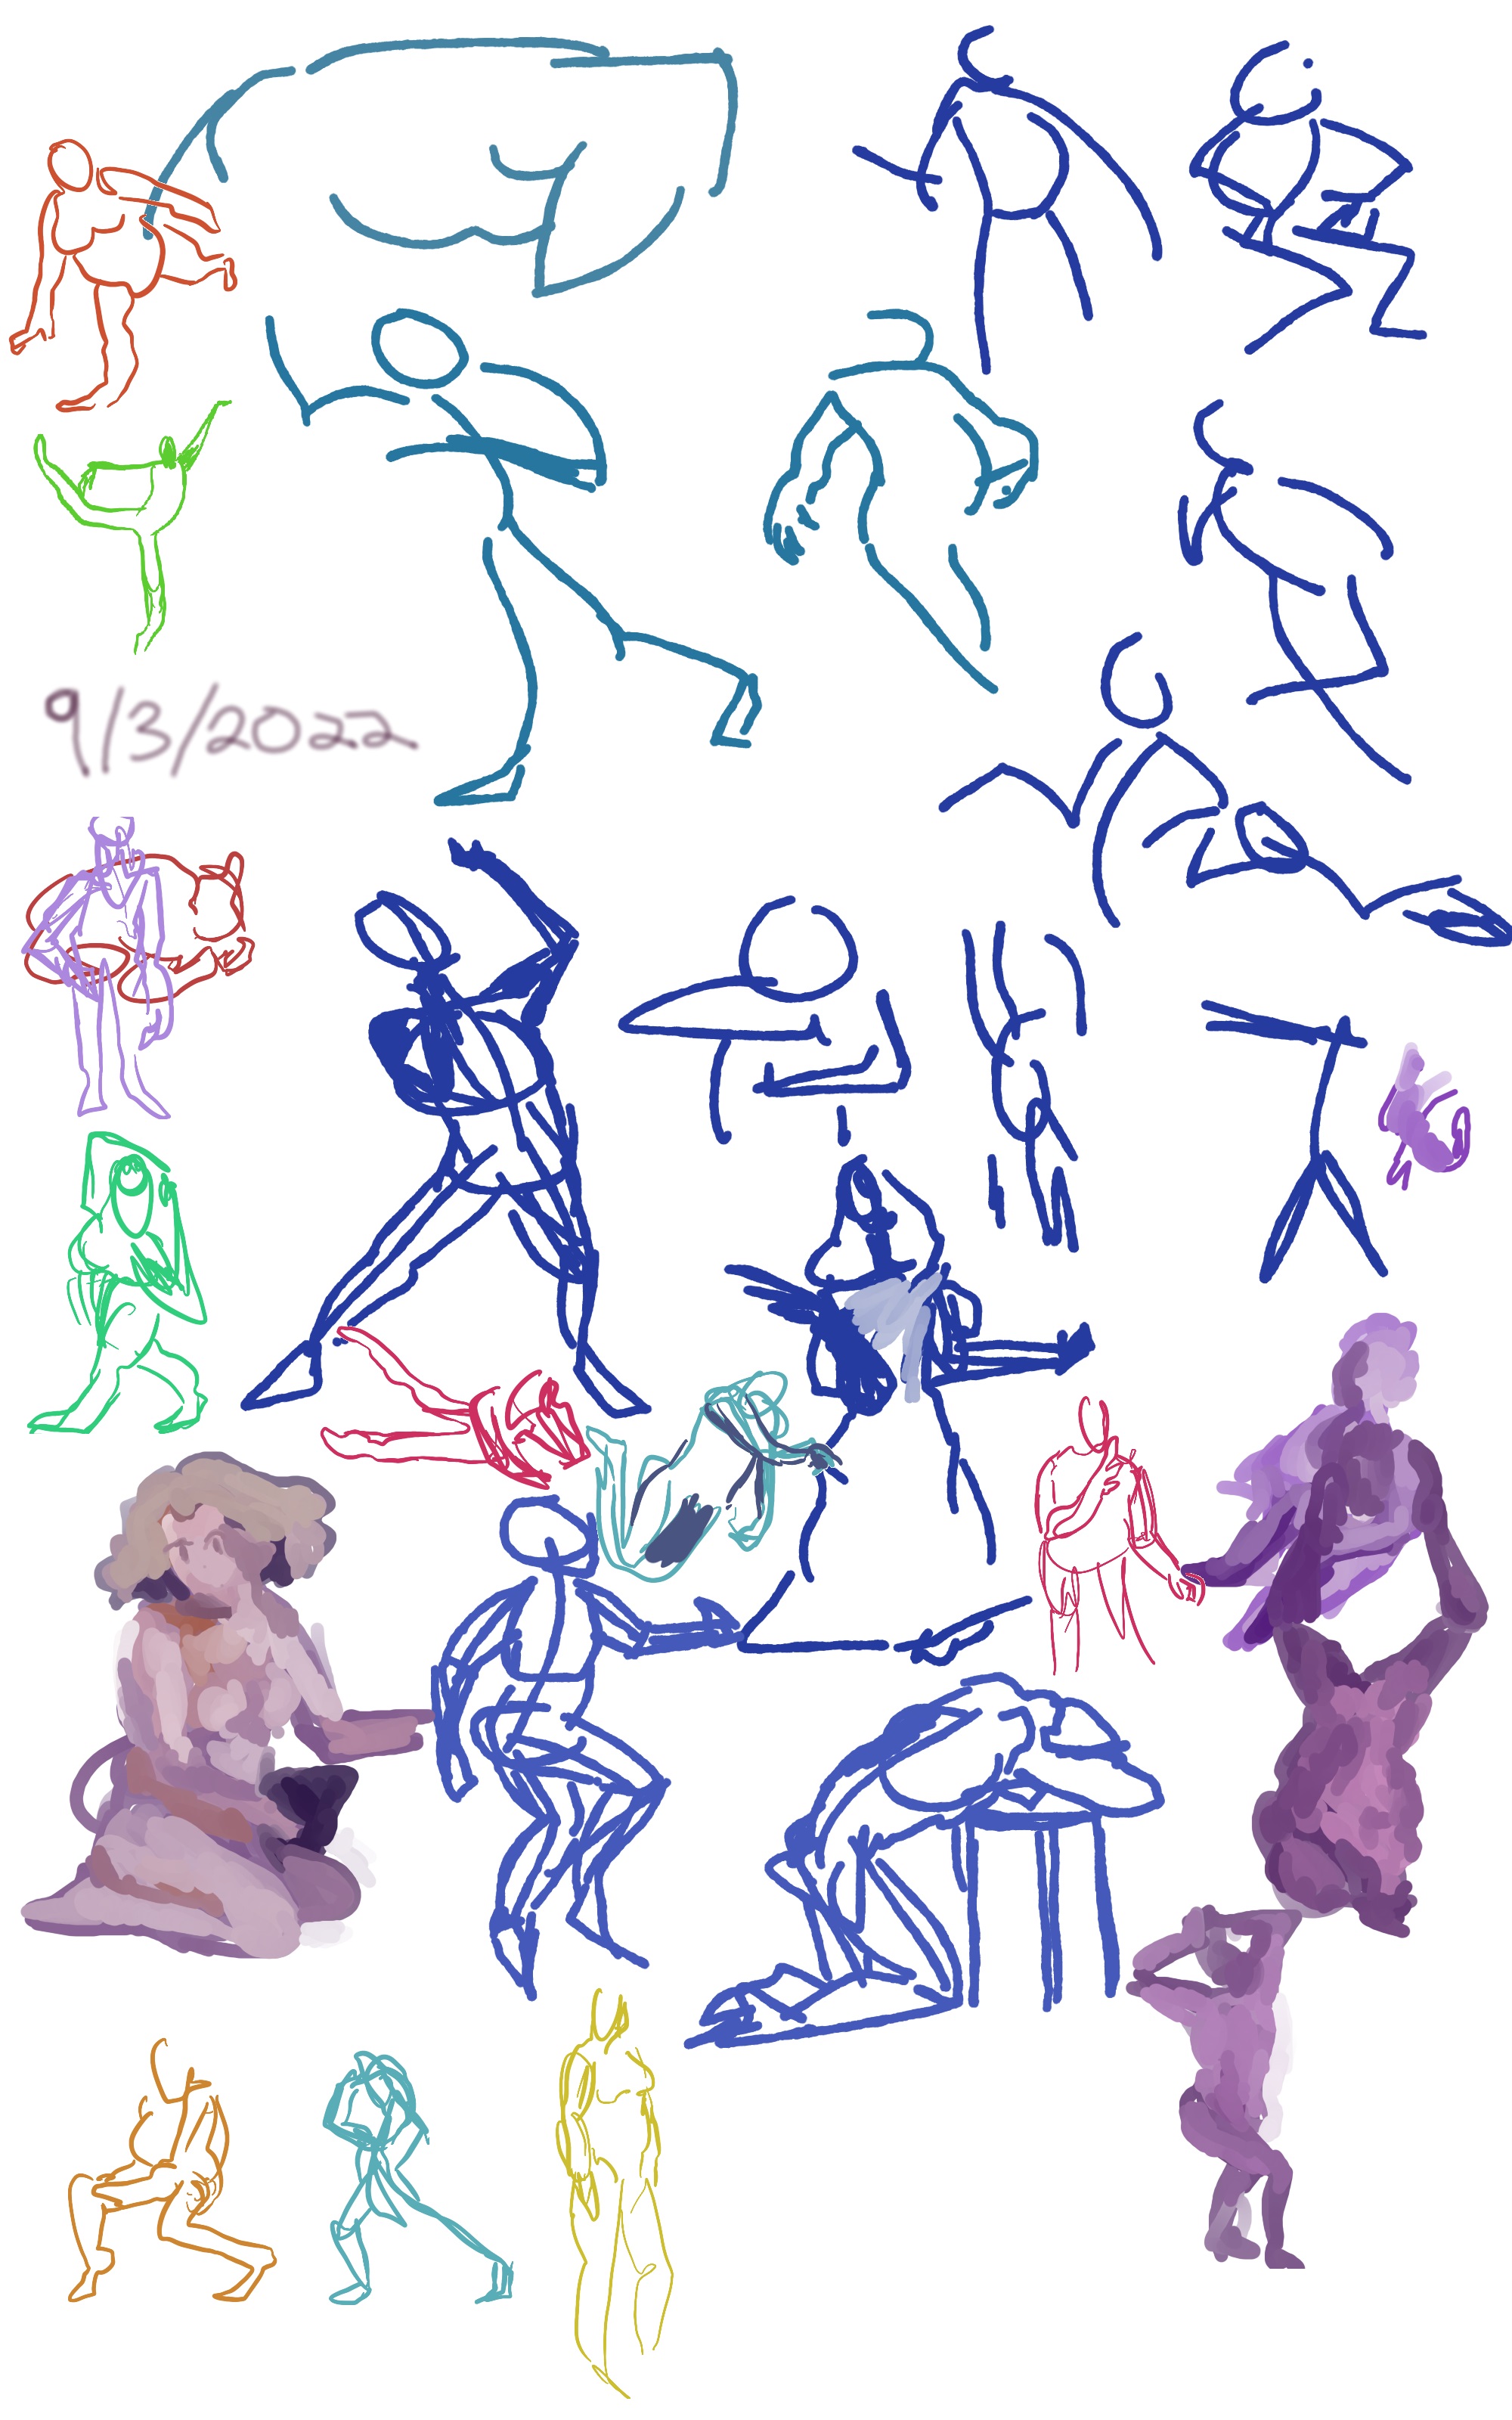 gesture drawings made on september 3, 2022